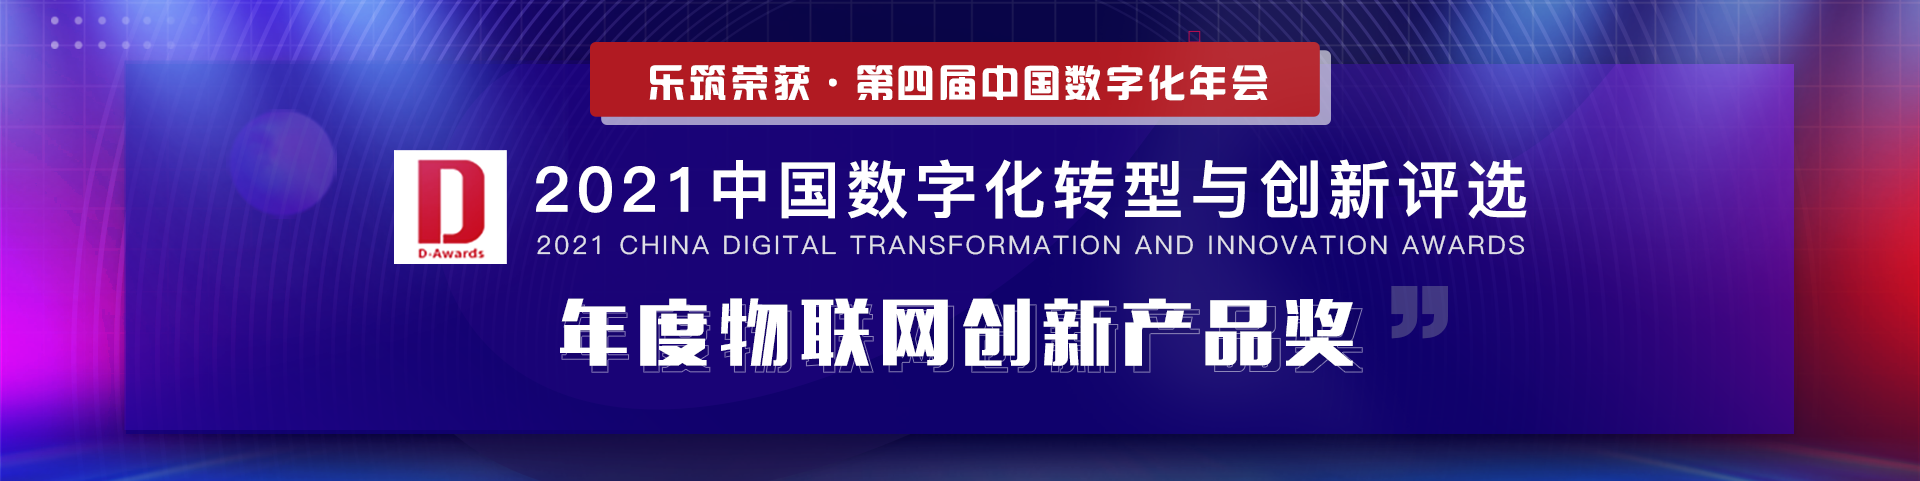 祝贺乐筑荣获2021中国数字化年会“年度互联网创新产品”荣誉